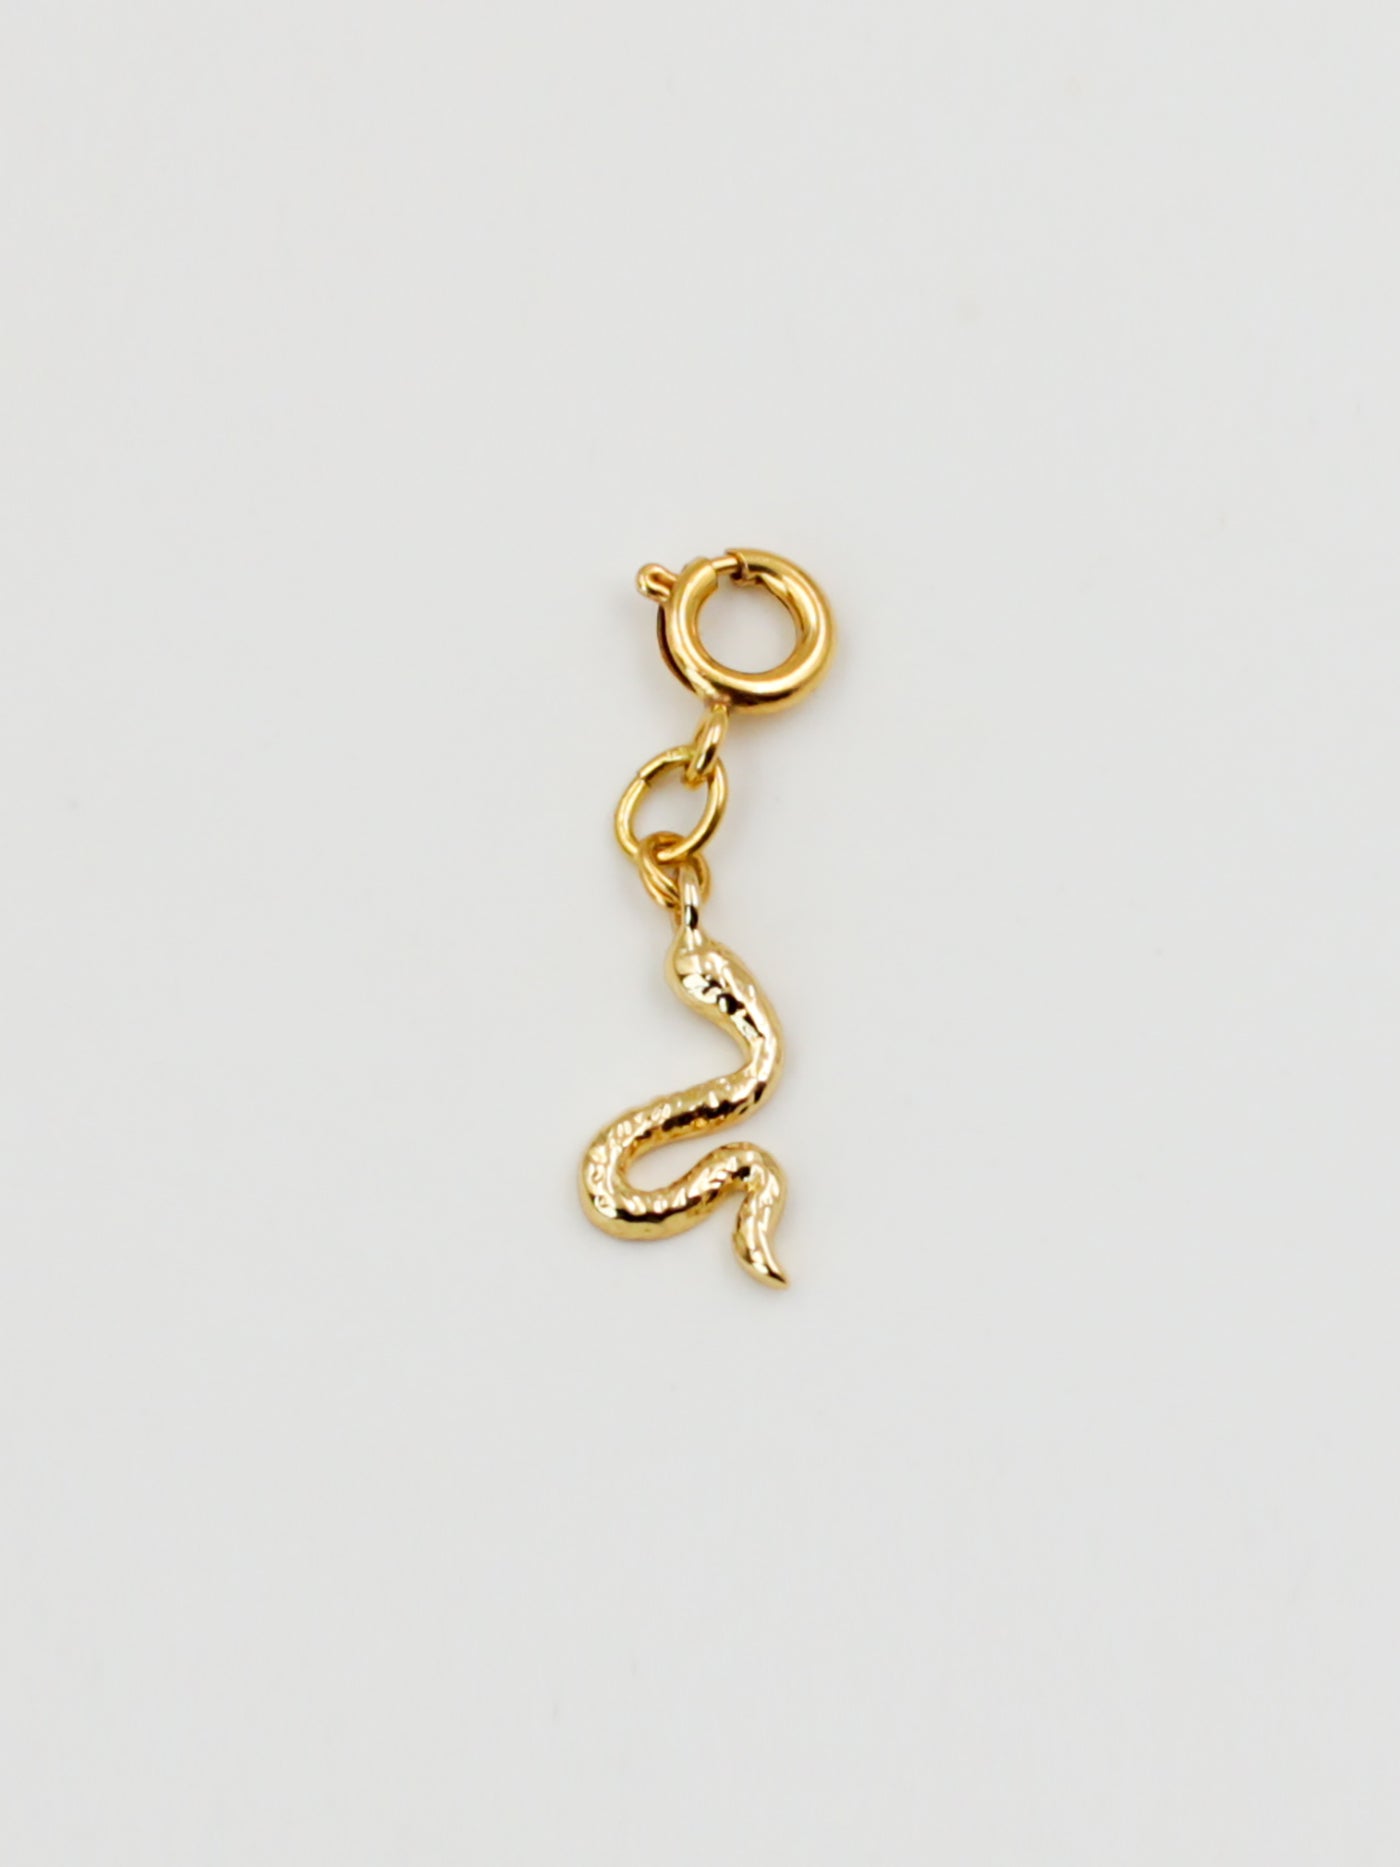 Bijoux dorés - Charm serpent doré de la gamme GRIGRI - L'Atelier des Dames